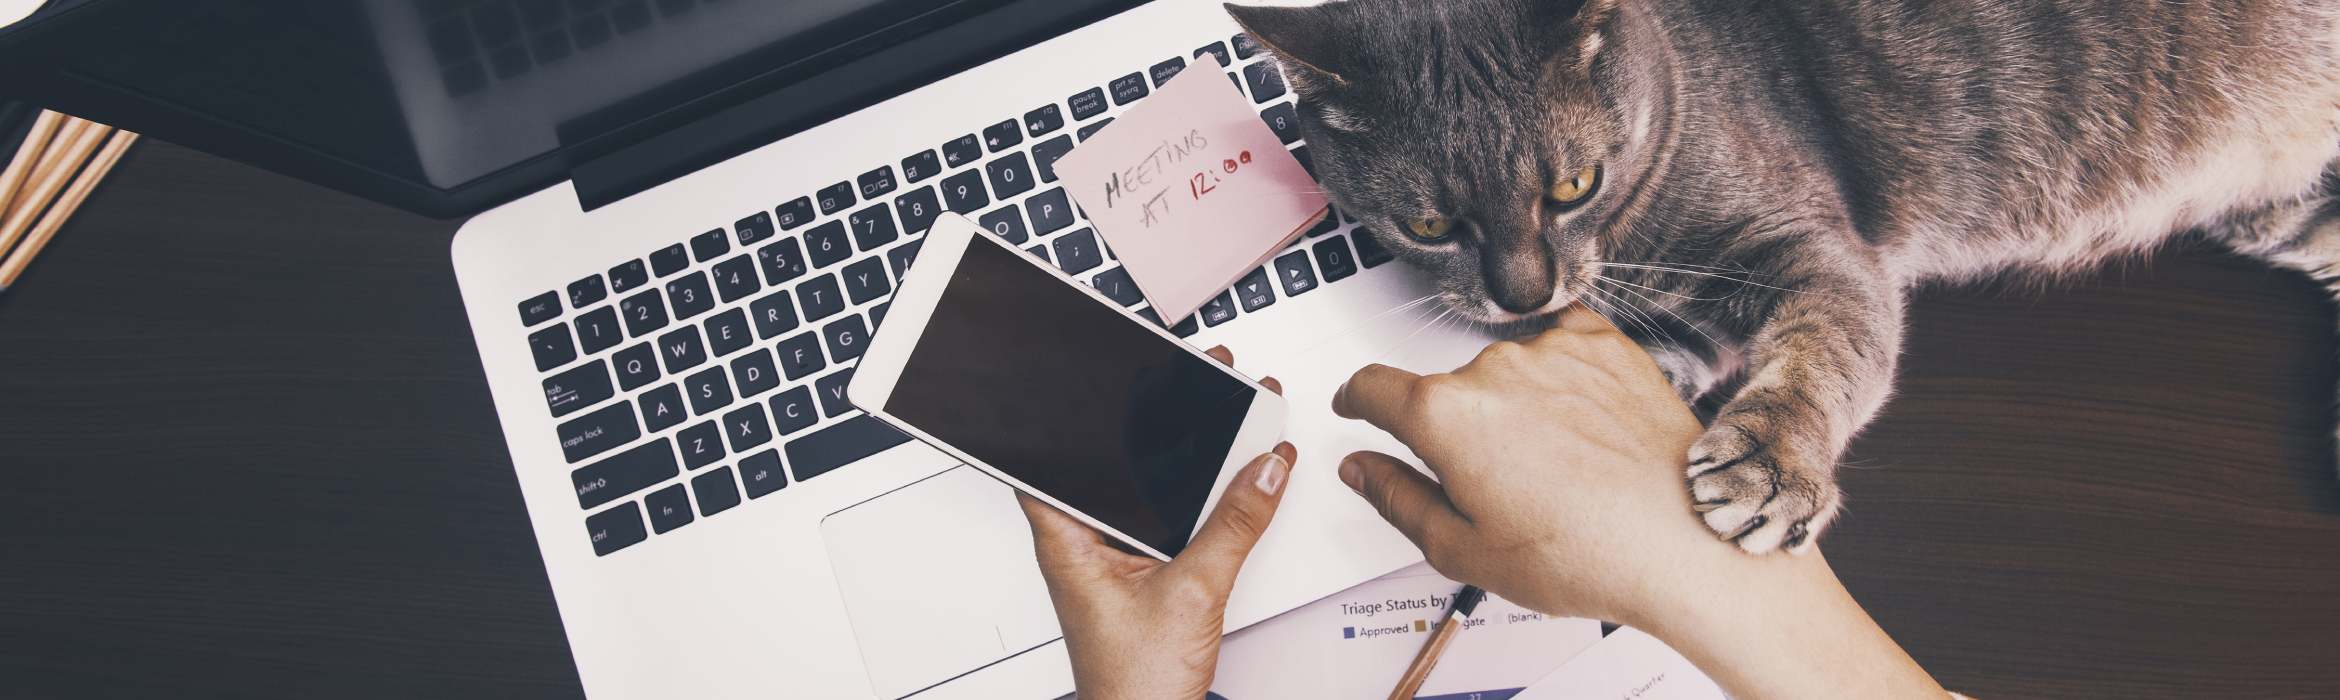 Bovenaanzicht van laptop, telefoon en handen met kat erbij